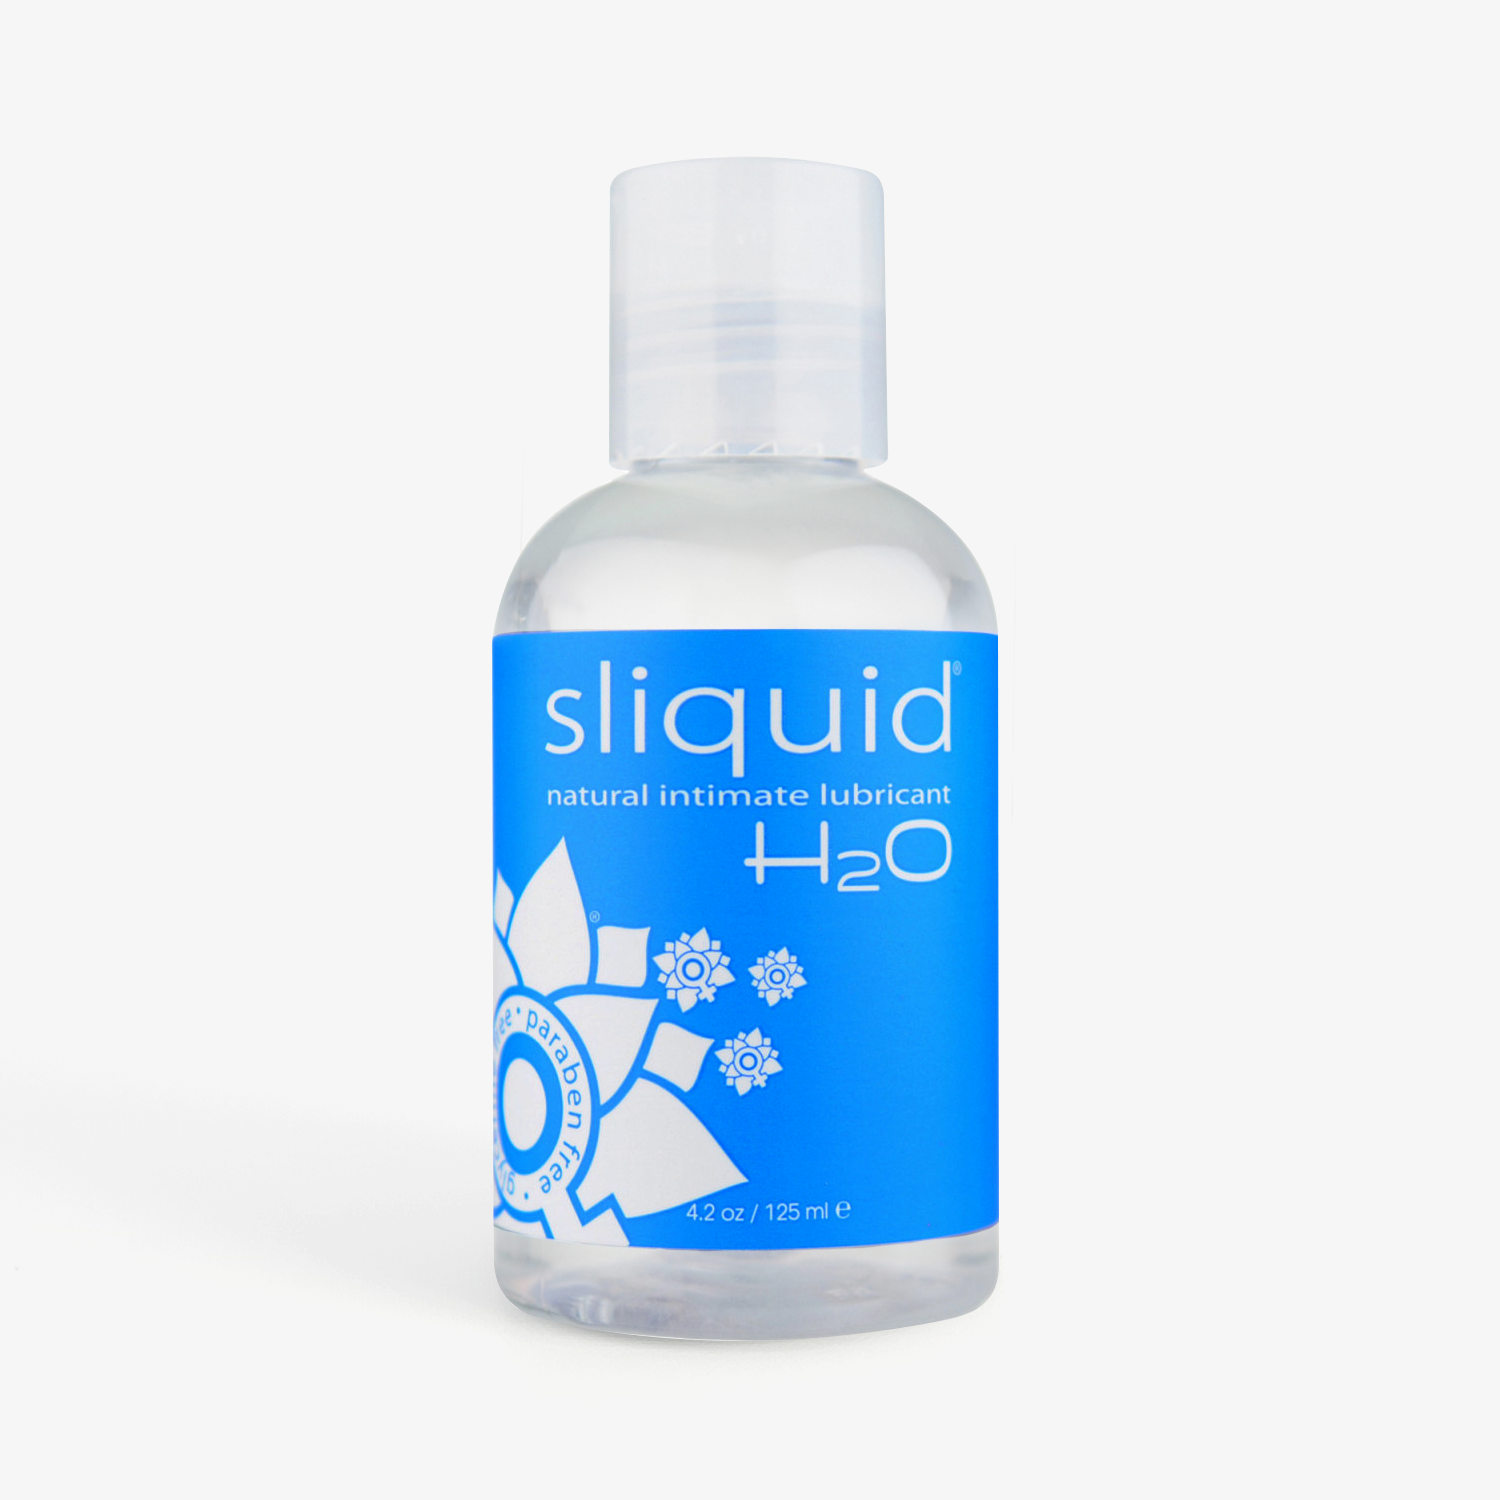 Sliquid H2O Original wasserbasiertes Gleitmittel 4,2oz/125ml